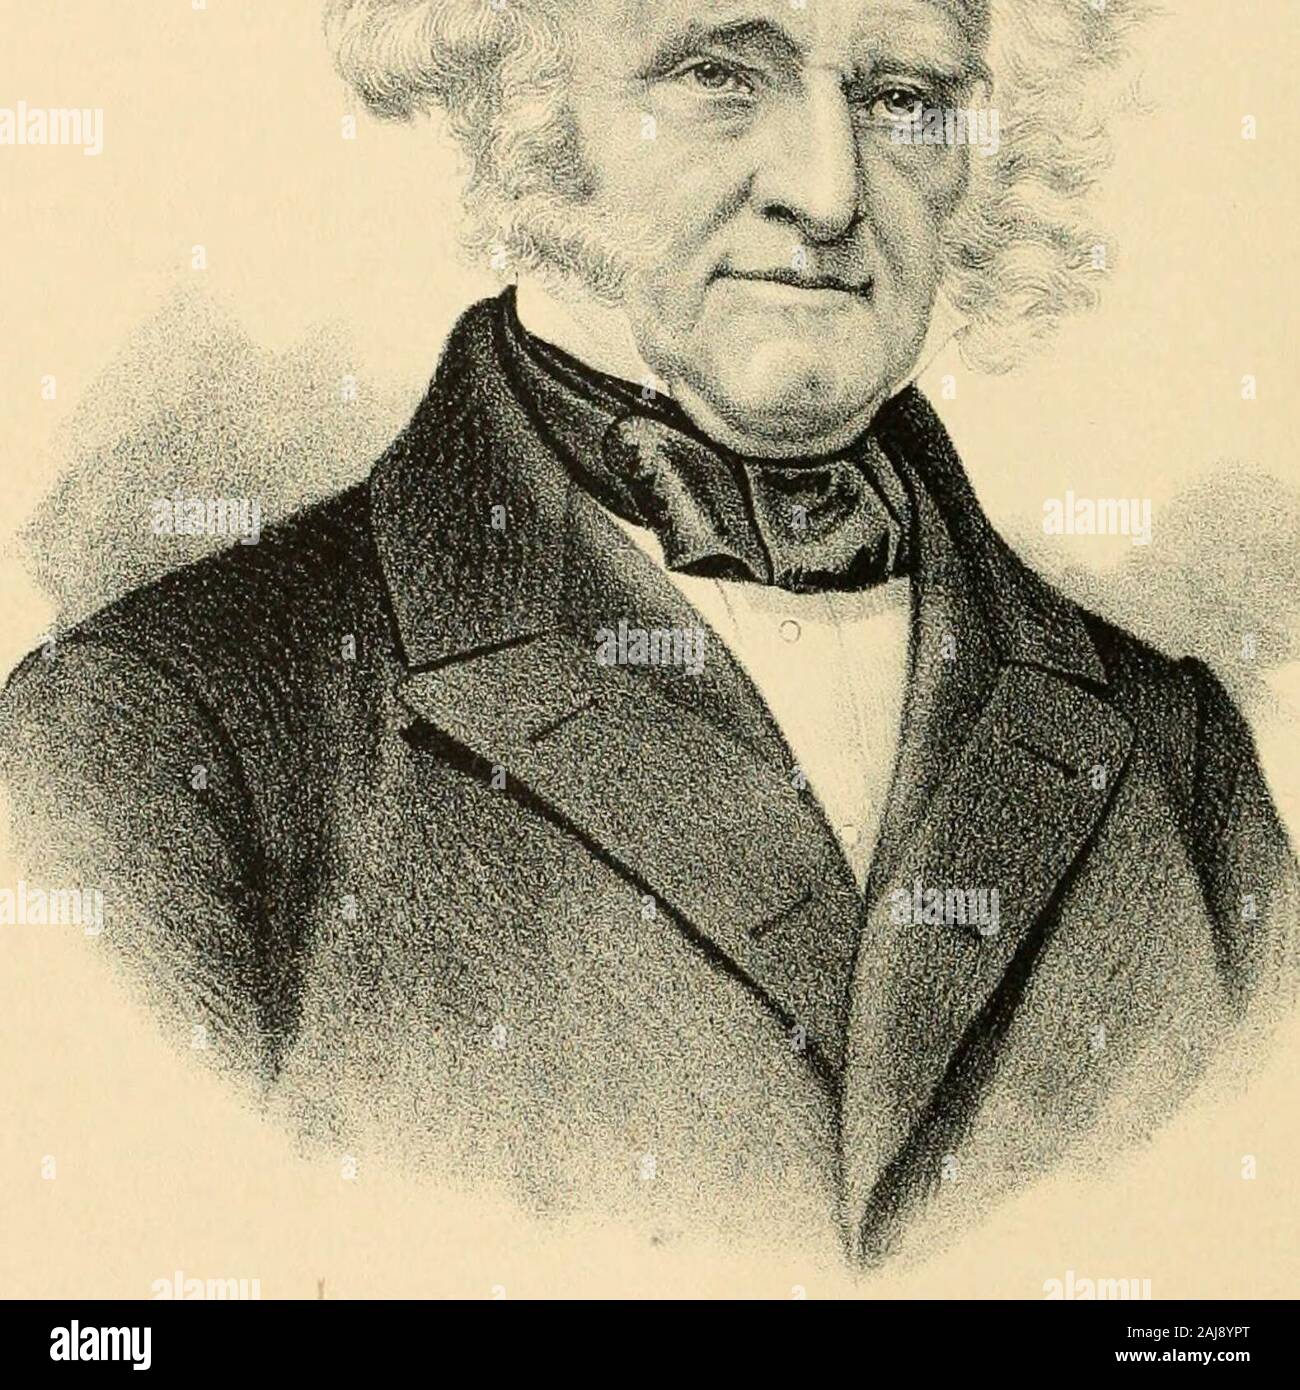 Porträt und biographische Album von Hecht und Calhoun County, Illinois.. . Tausend Männer, gewann ein Signal Sieg über die Britische Armee von aboutnine Tausend. Sein Verlust war aber dreizehn, während dies Zumverlust der Britischen war zweitausend und sechshundert, Den Namen von General Jackson begann bald, Männer zu sein - in Verbindung mit der Präsidentschaft erwähnt, aber, 1824, wurde er besiegt durch Herrn Adams. Er war jedoch in der Wahl von 1828 erfolgreich und wurde electedfor eine zweite Amtszeit 1832. 1829, kurz bevor die Zügel der Regierung heassumed, er mit dem schrecklichen Elend der sein Leben in den Tod met ofhis Stockfoto